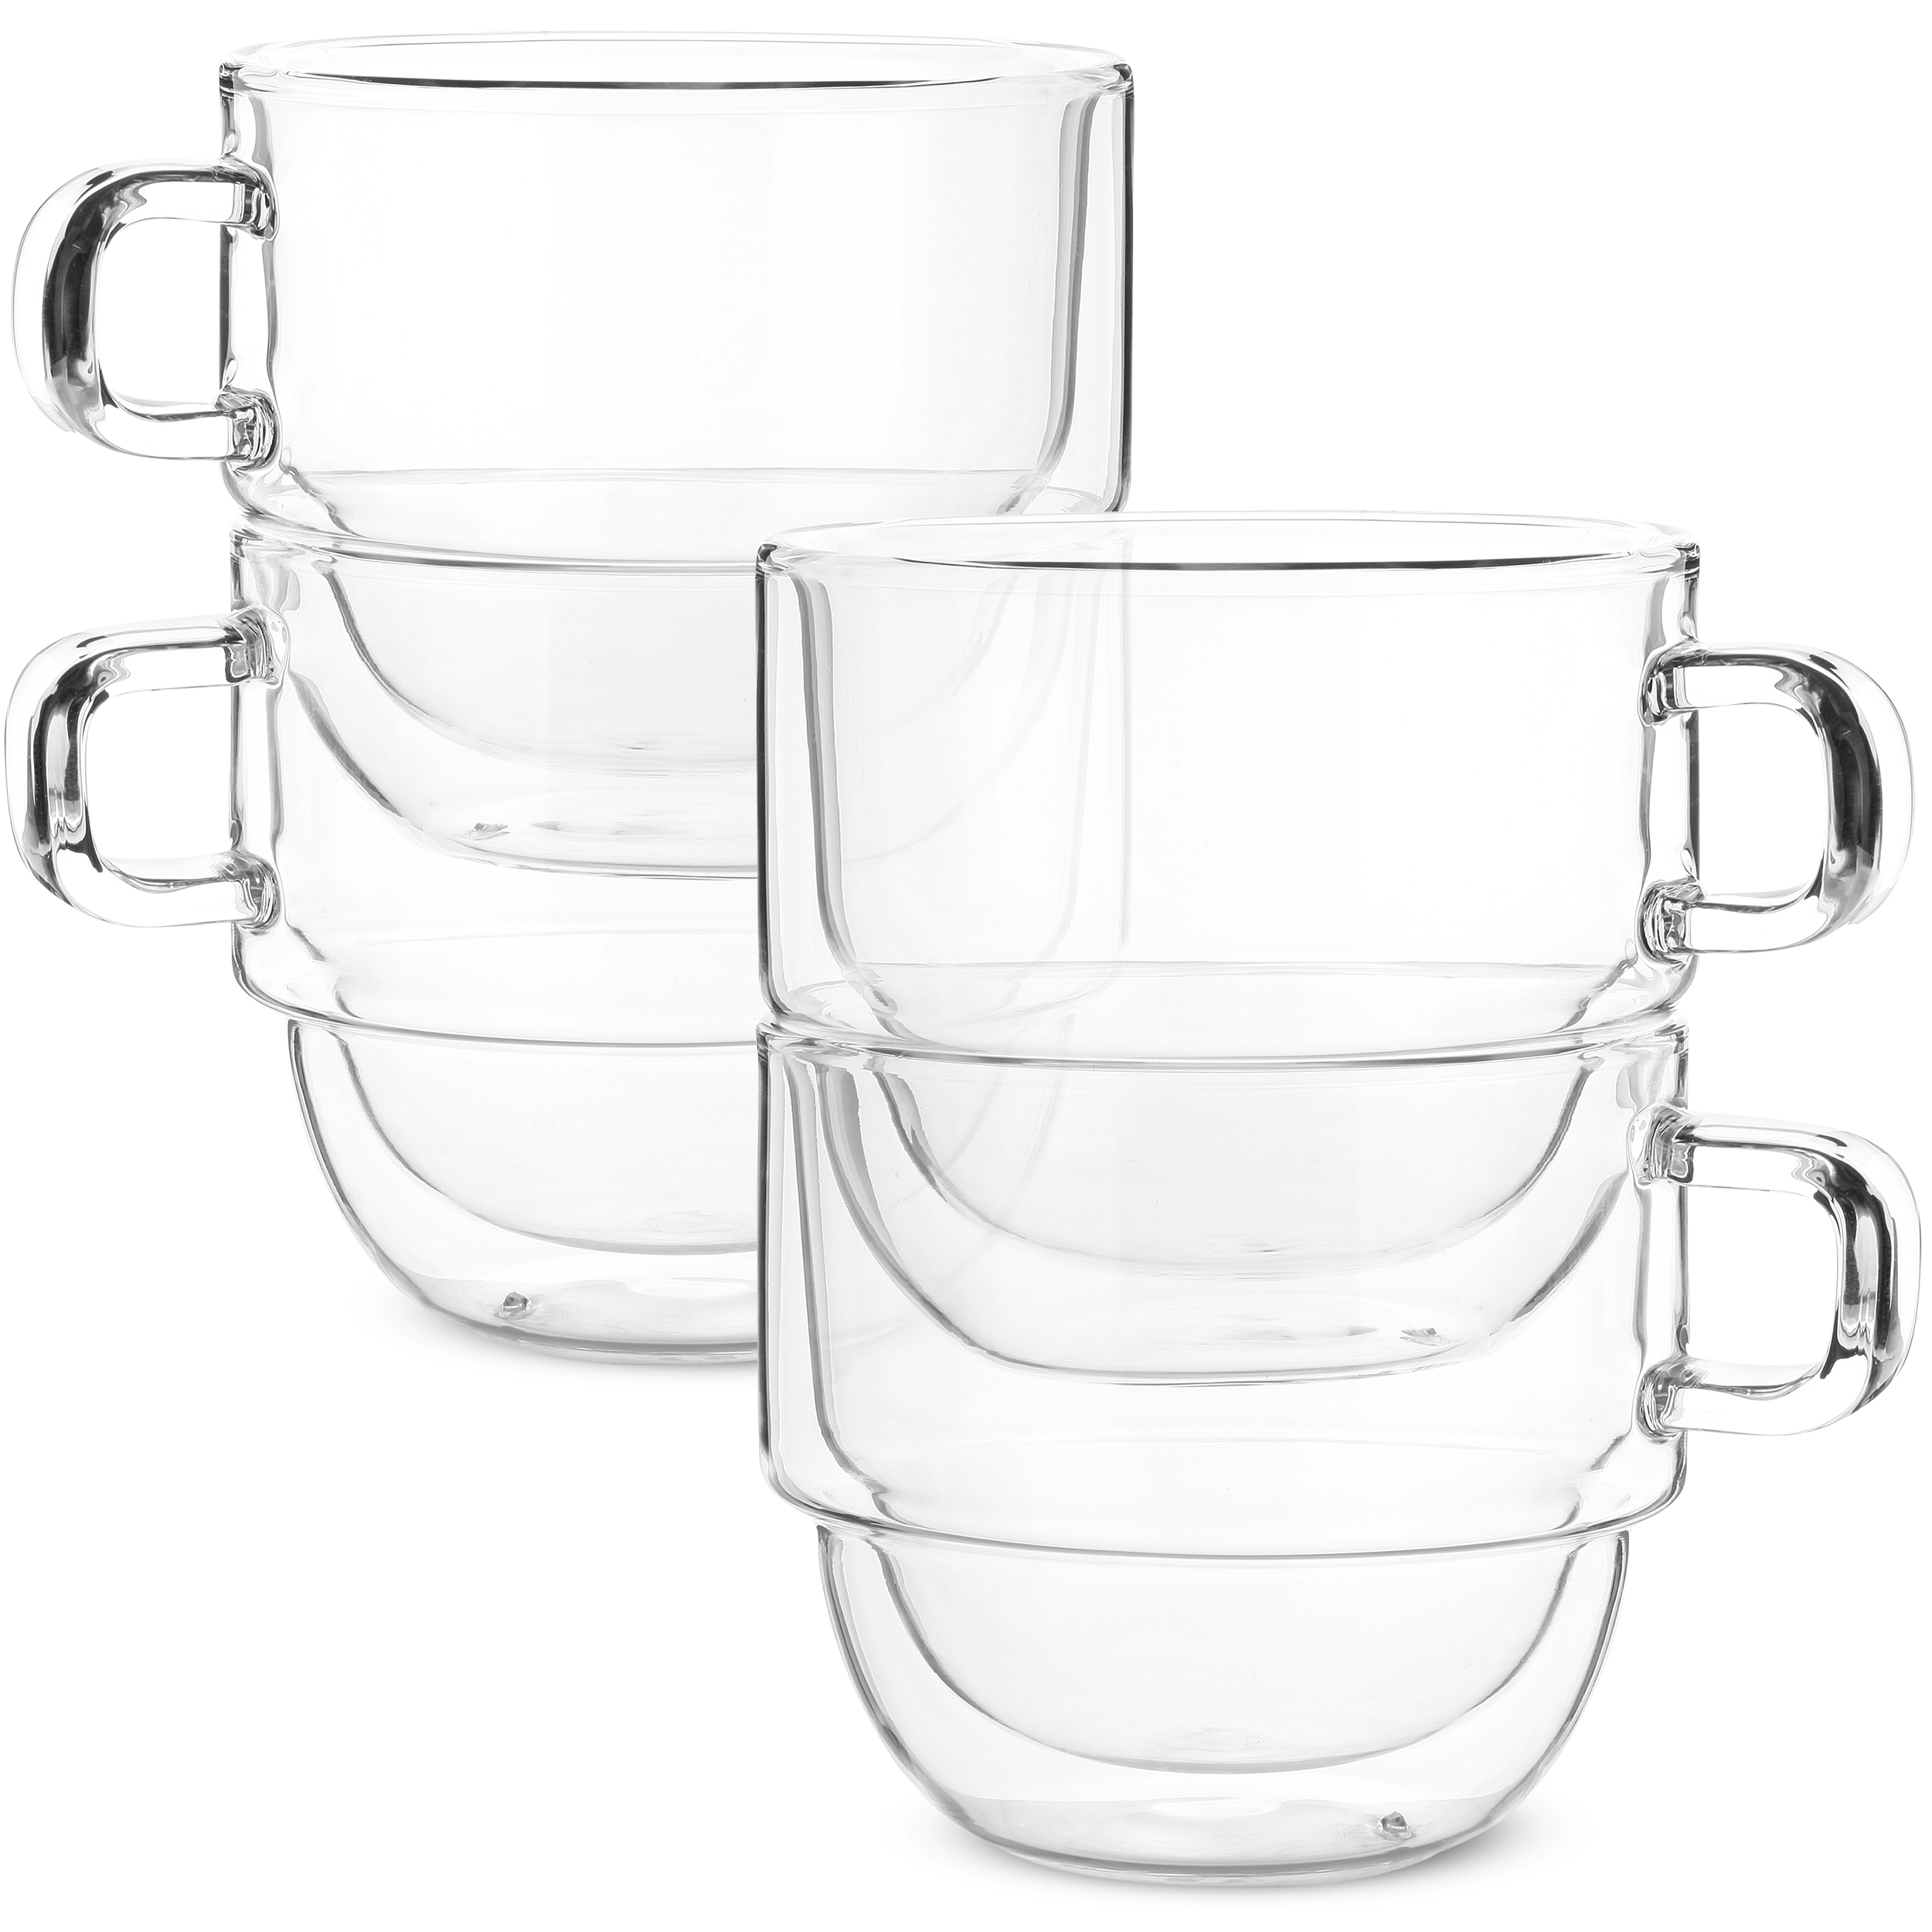 BTäT- Insulated Coffee Mugs (12oz, 350ml)